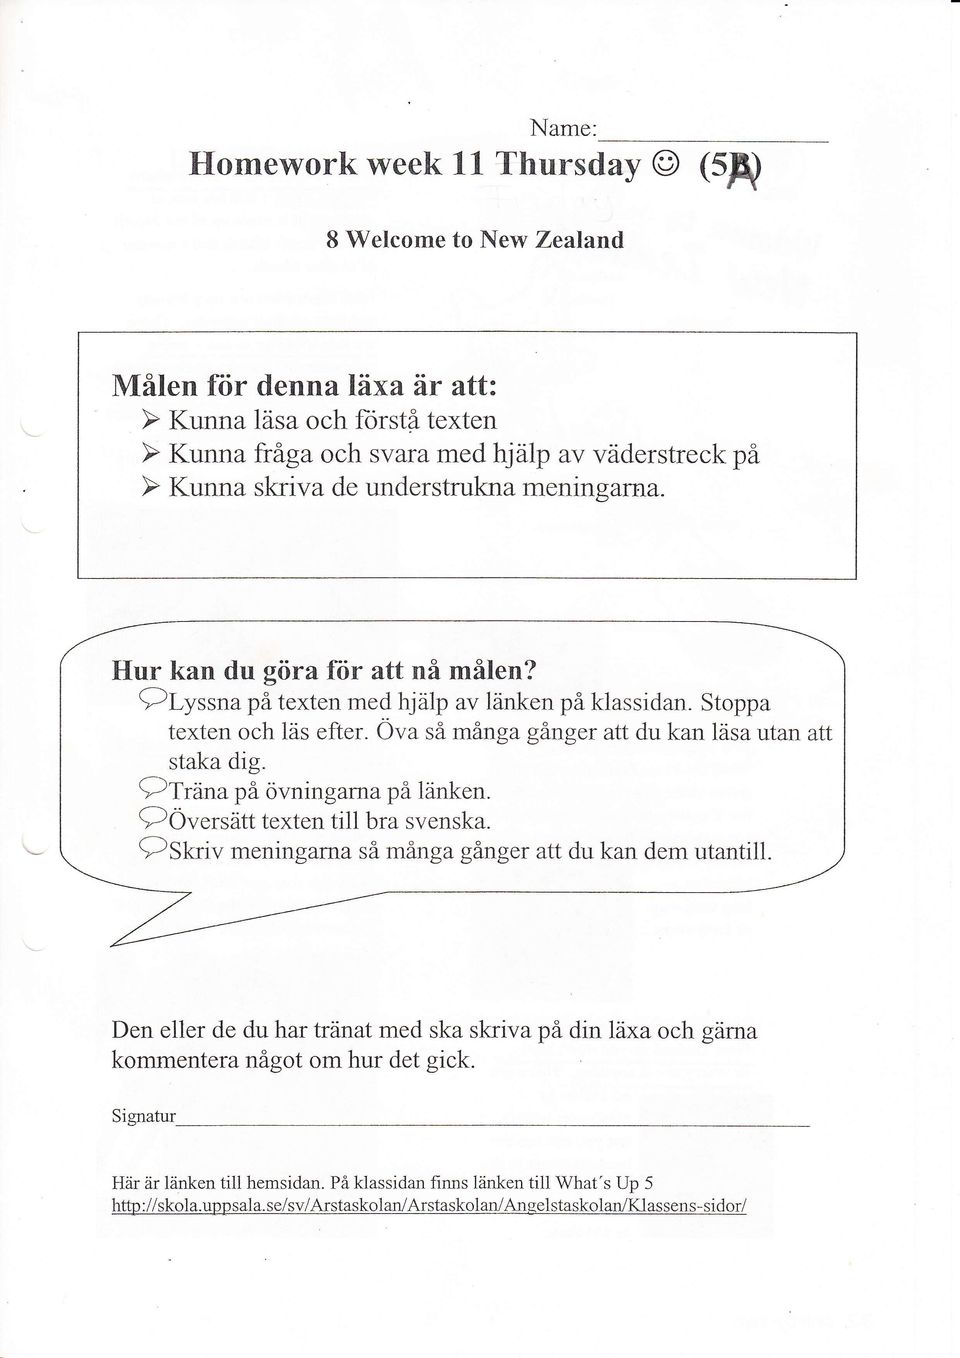 Ova så många gånger att du kan läsa utan att staka dig. f-\-.. o.r \)Trana på övningarna på länken.?översäff texten ti1l bra svenska.